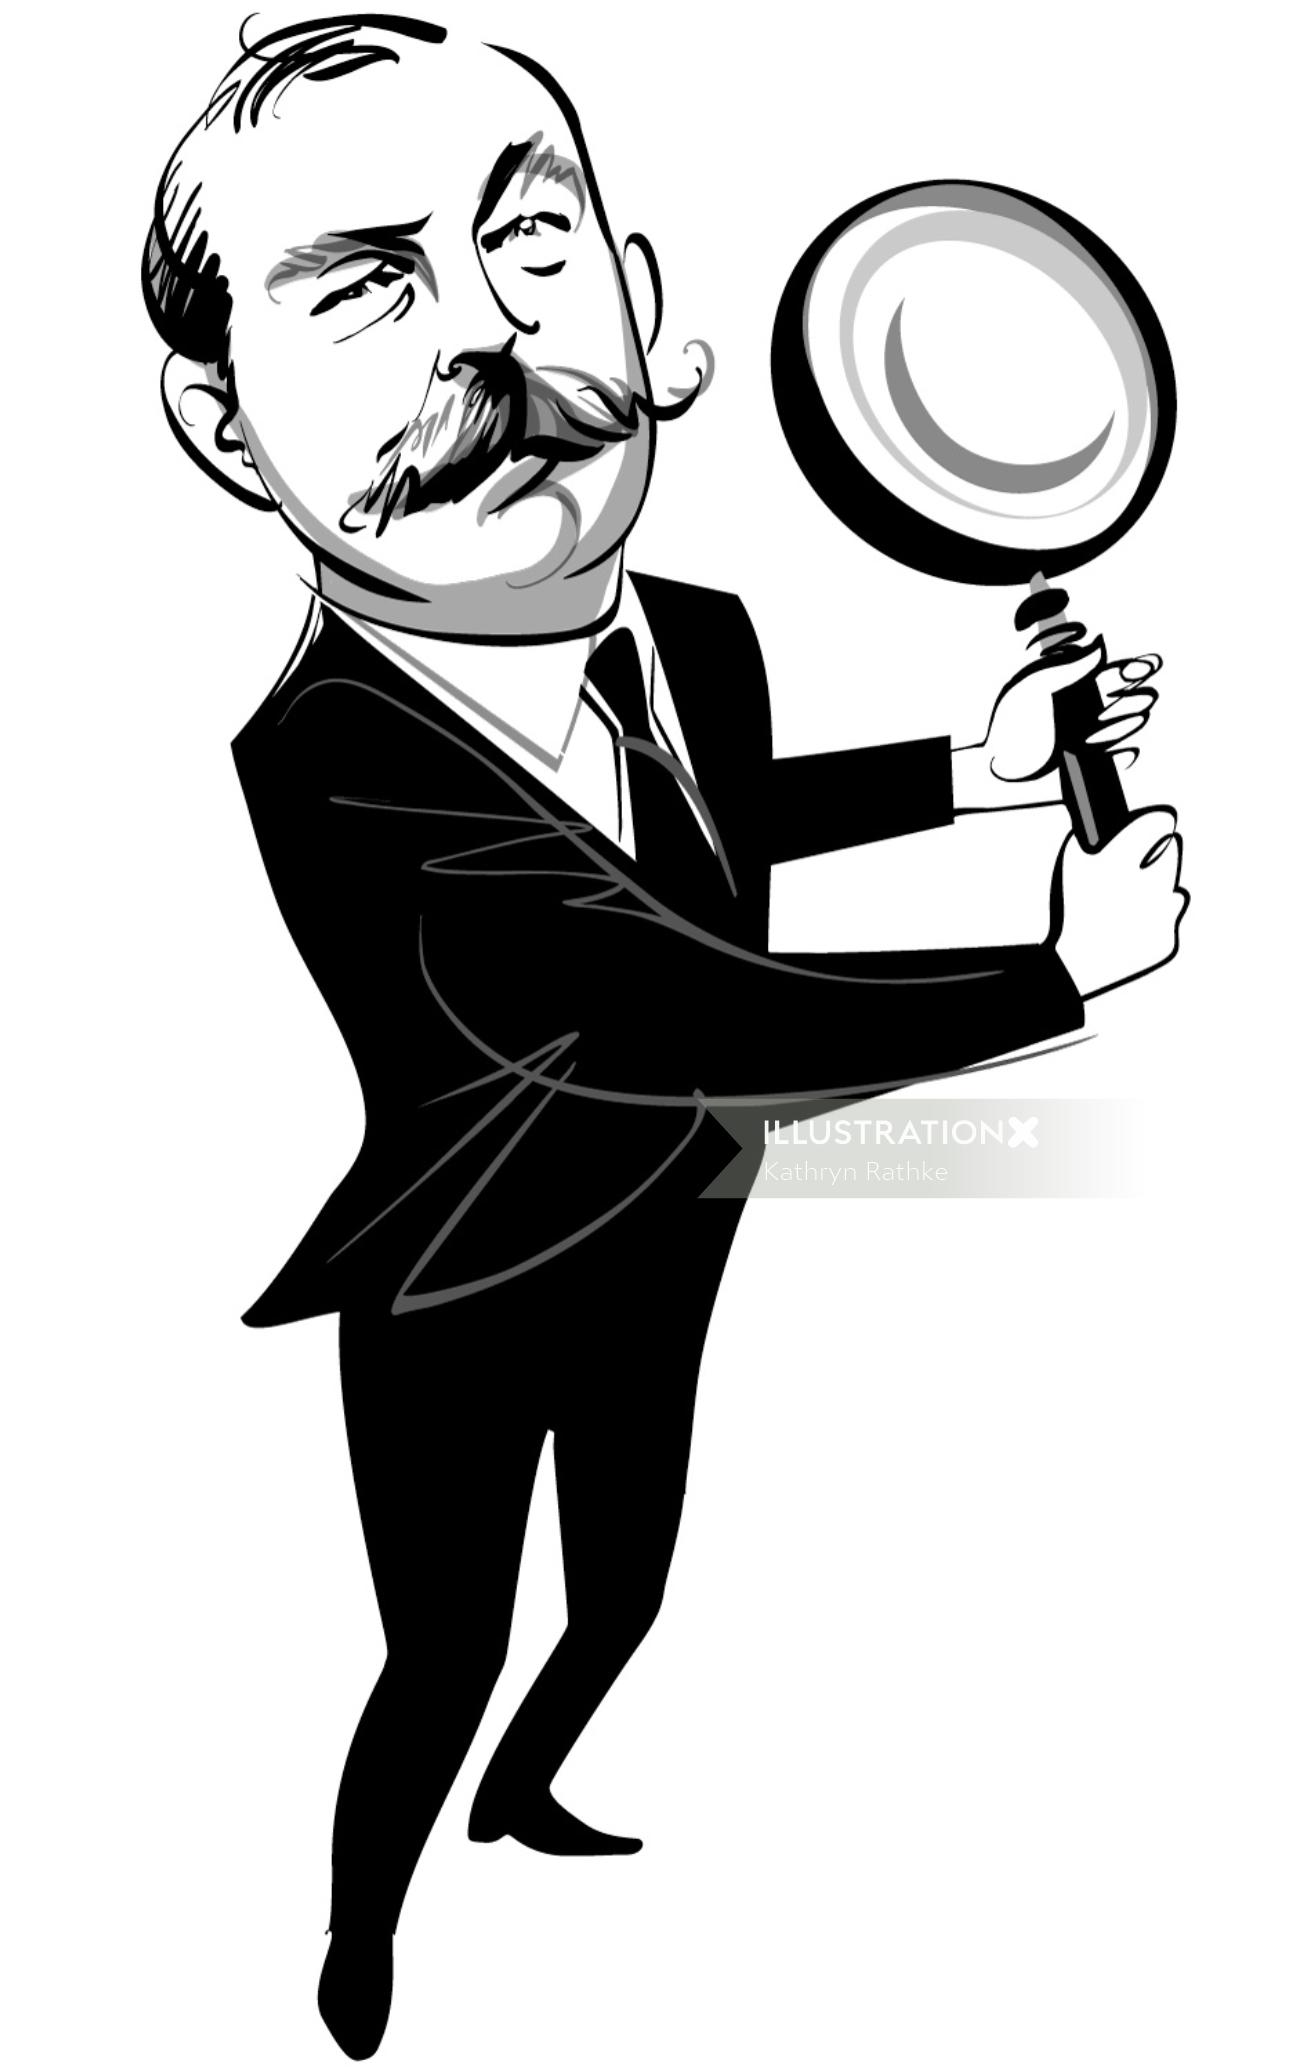 Sir Arthur Conan Doyle Portrait
